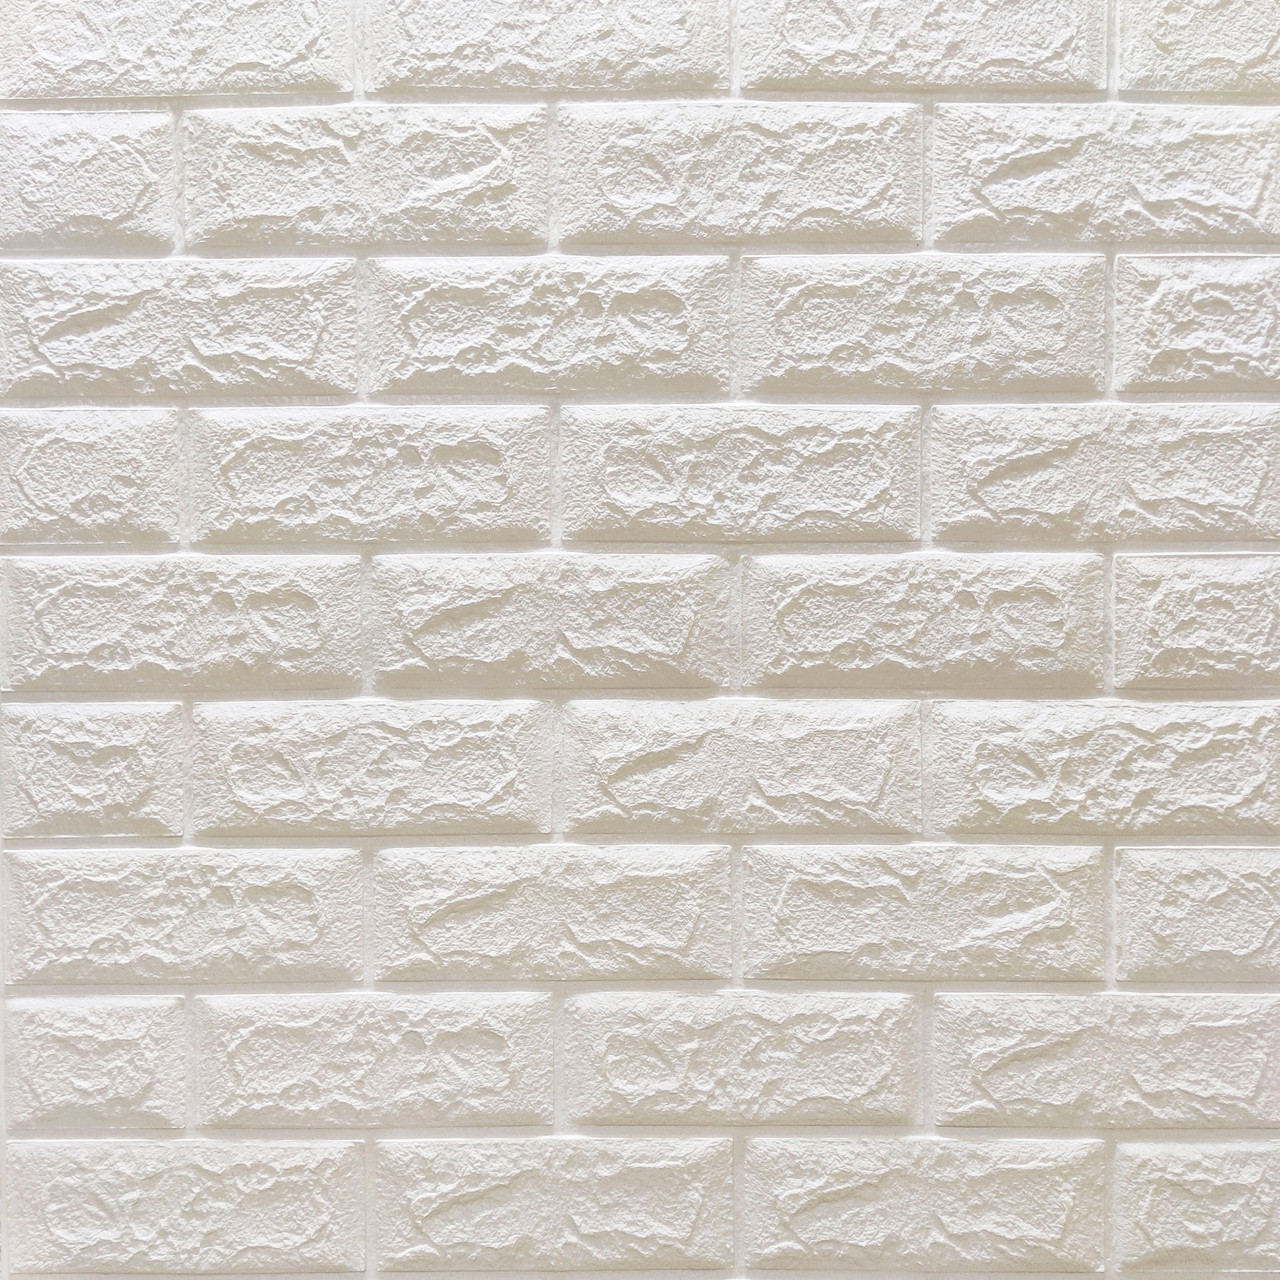 3д панель Глянцева Біла Цегла самоклеючі 3d для стін декоративні ПВХ панелі 700x770x5 мм (1-5мм-ГЛ)